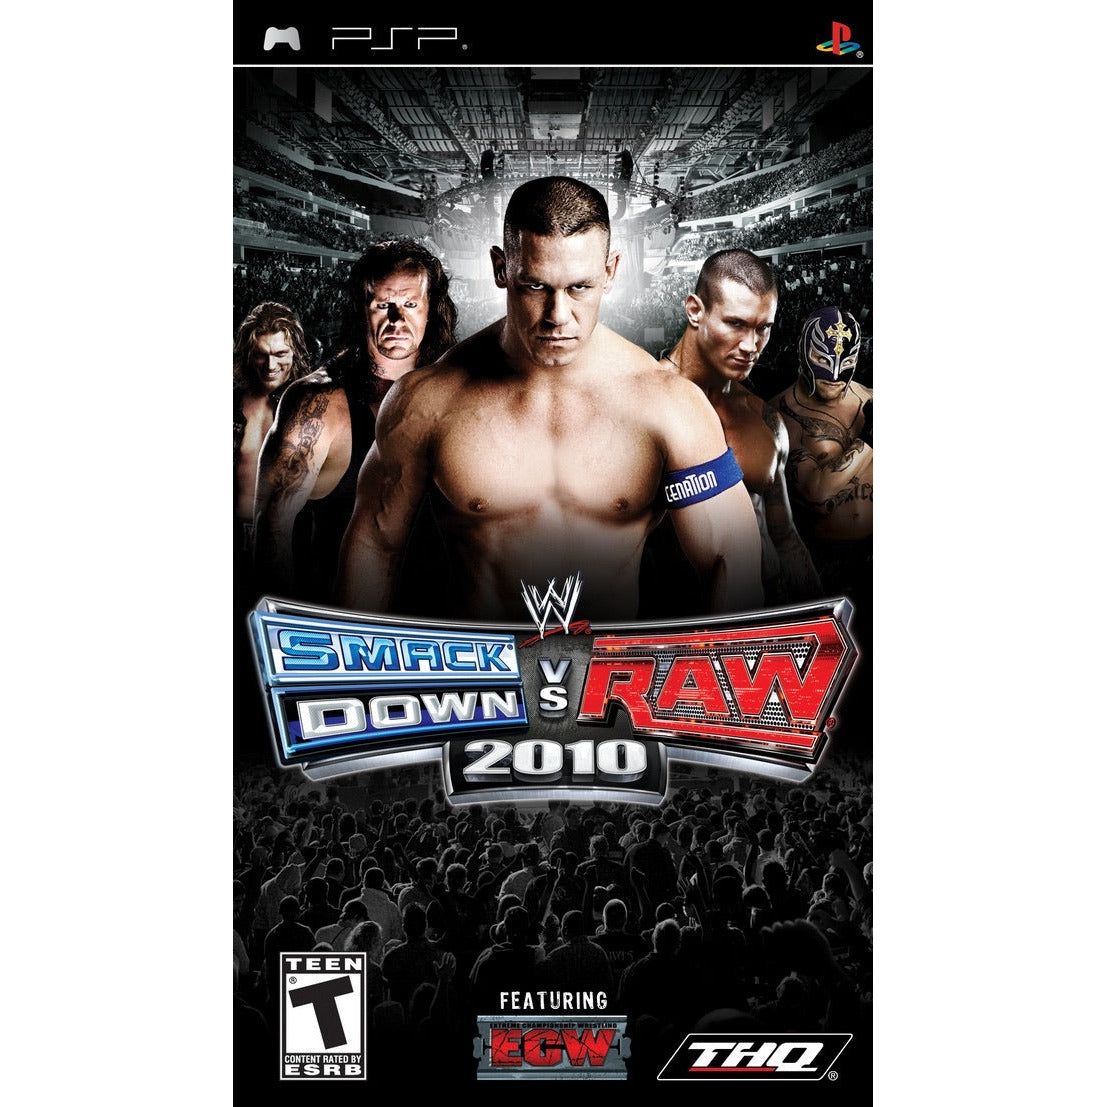 PSP - WWE SmackDown vs Raw 2010 (In Case)